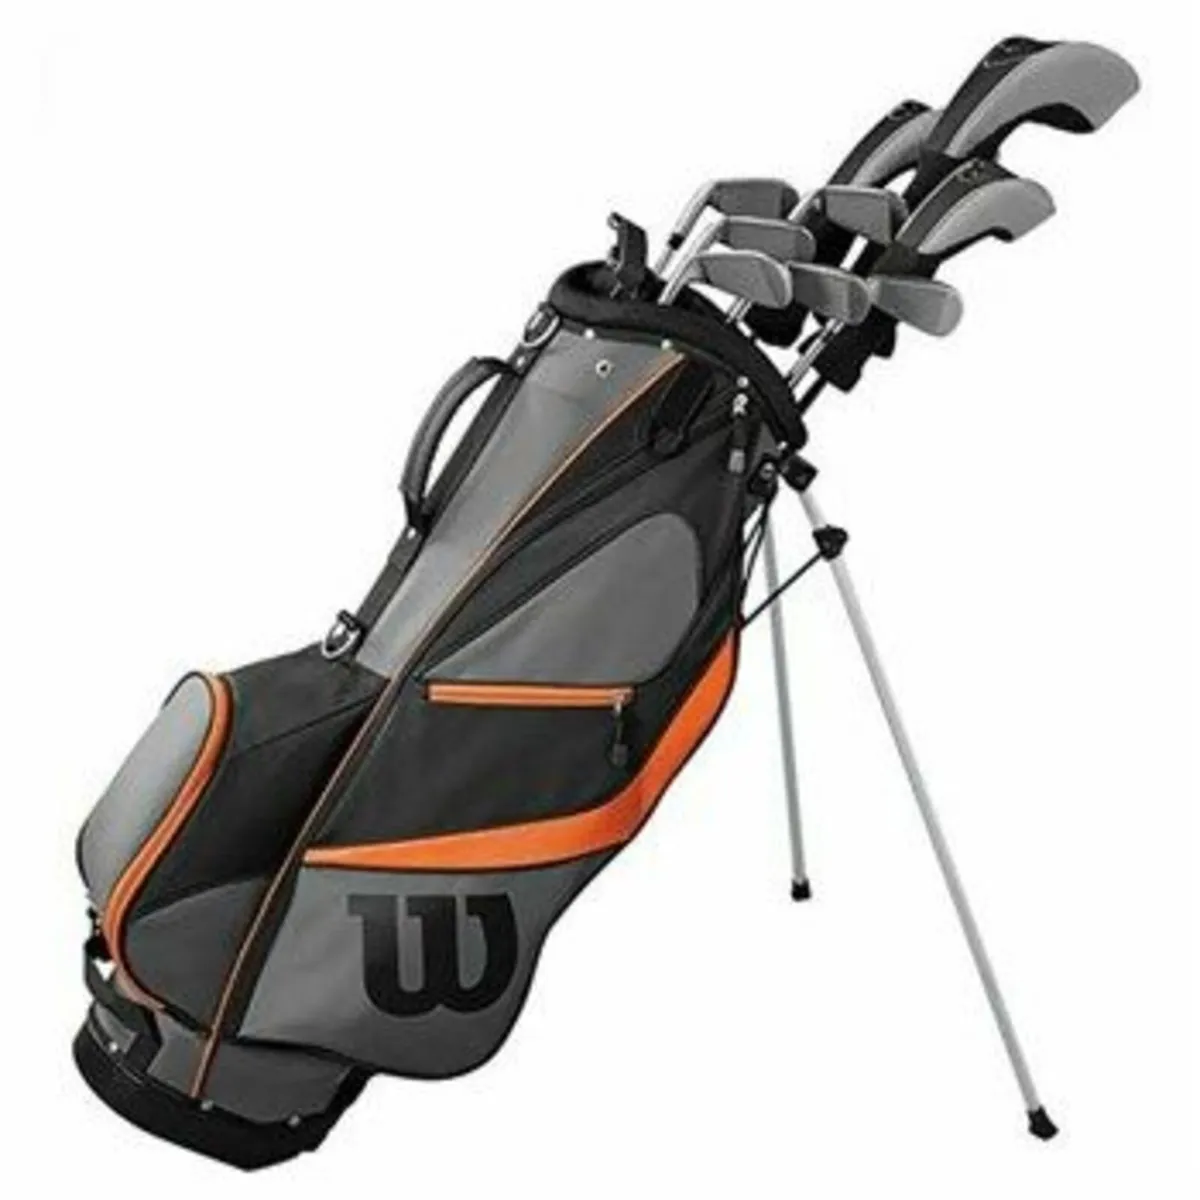 Wilson X31 Full Golf Set - Like New